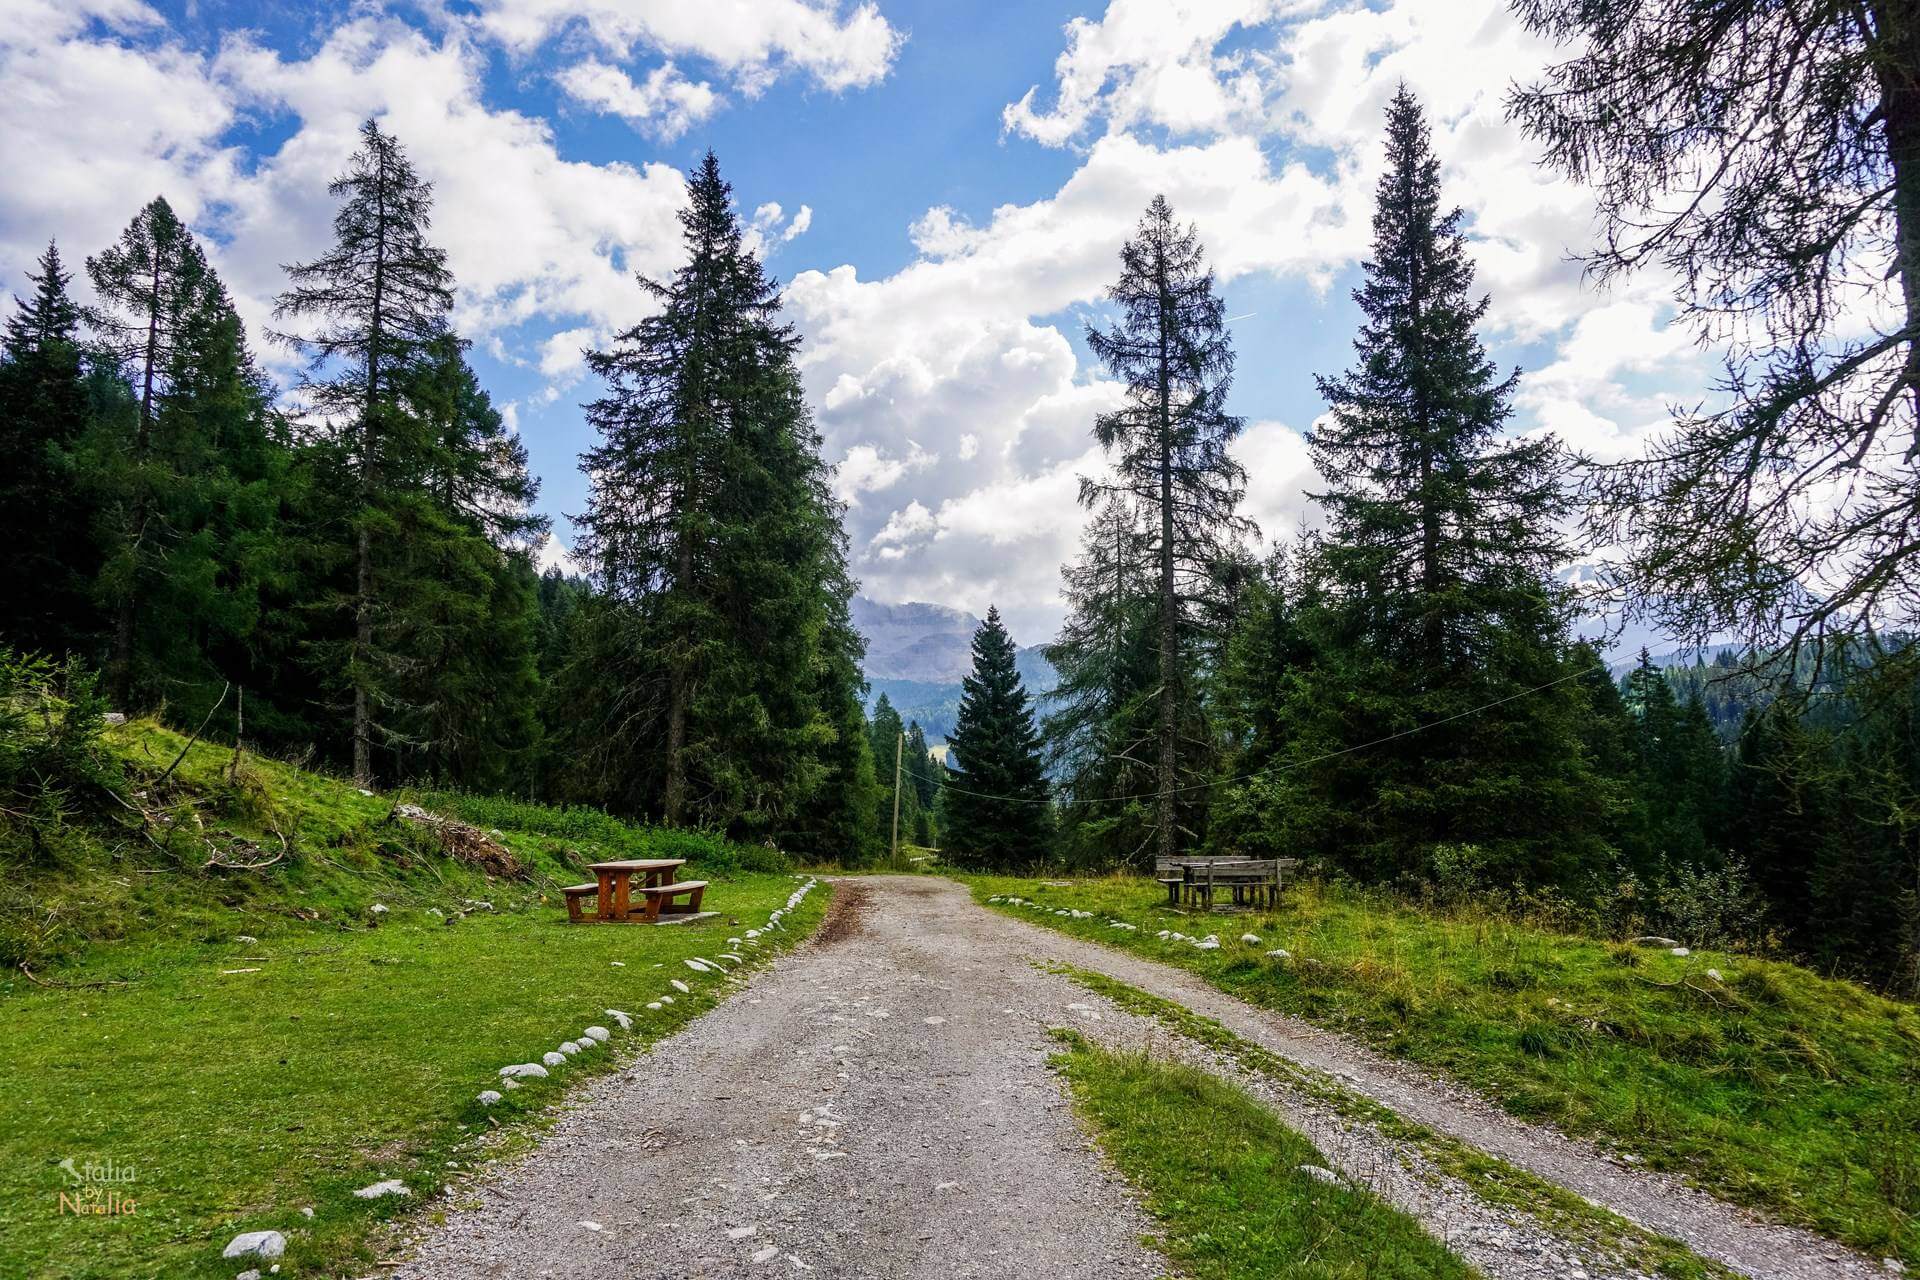 Jezioro Nambino łatwy szlak Park Adamello Brenta Madonna di Campiglio włoskie Alpy Retyckie